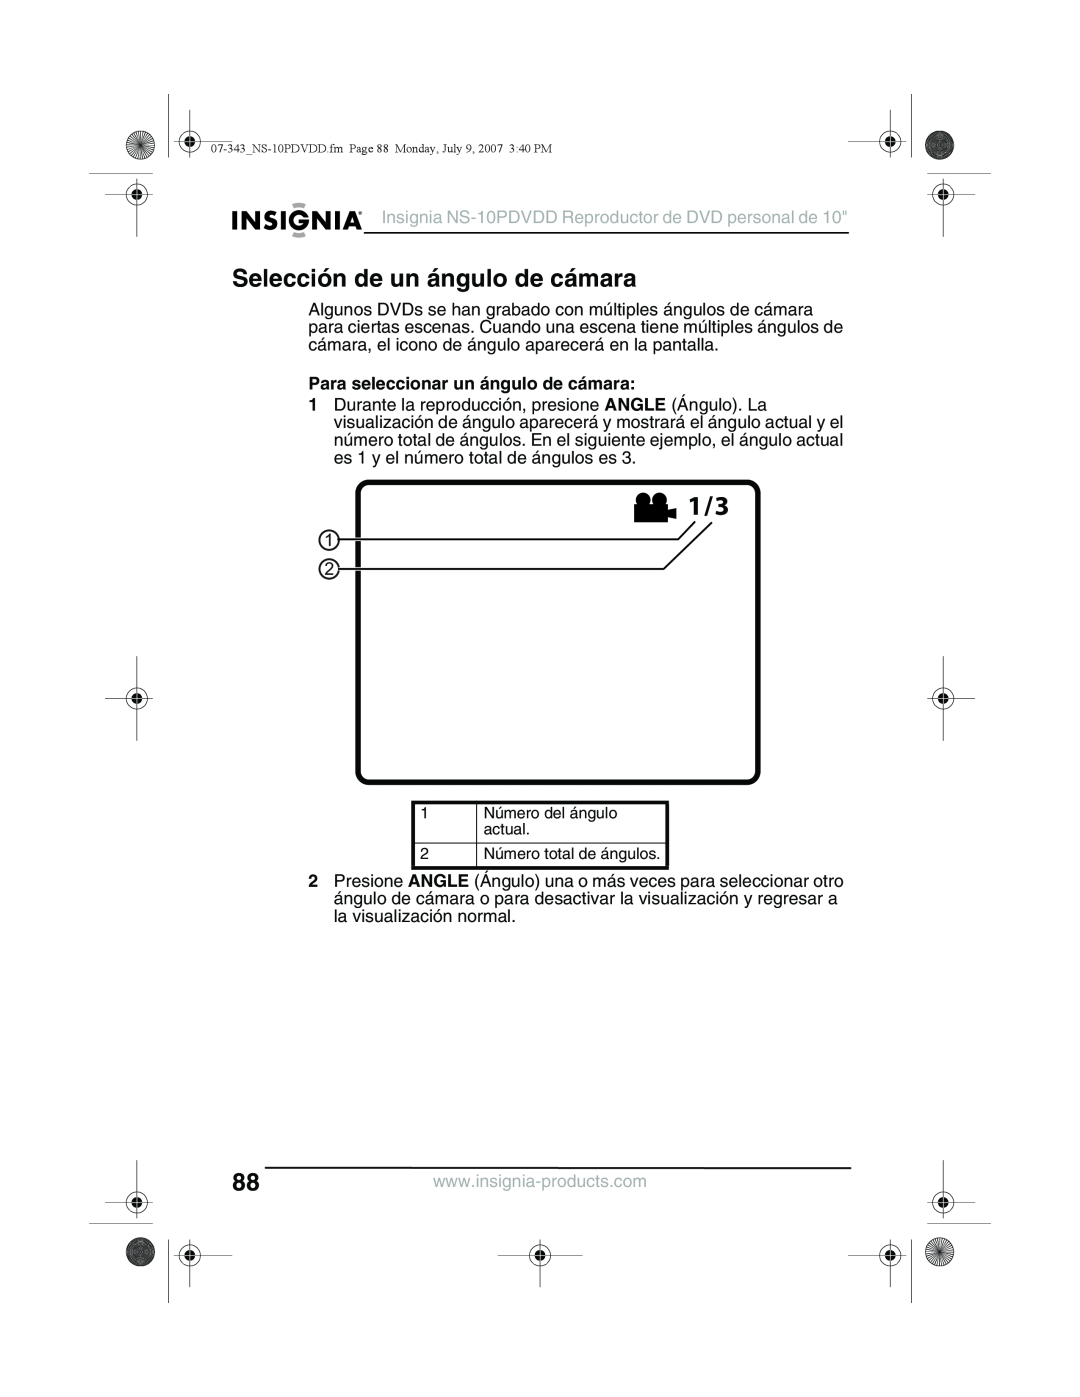 Insignia NS-10PDVDD manual Selección de un ángulo de cámara, Para seleccionar un ángulo de cámara 